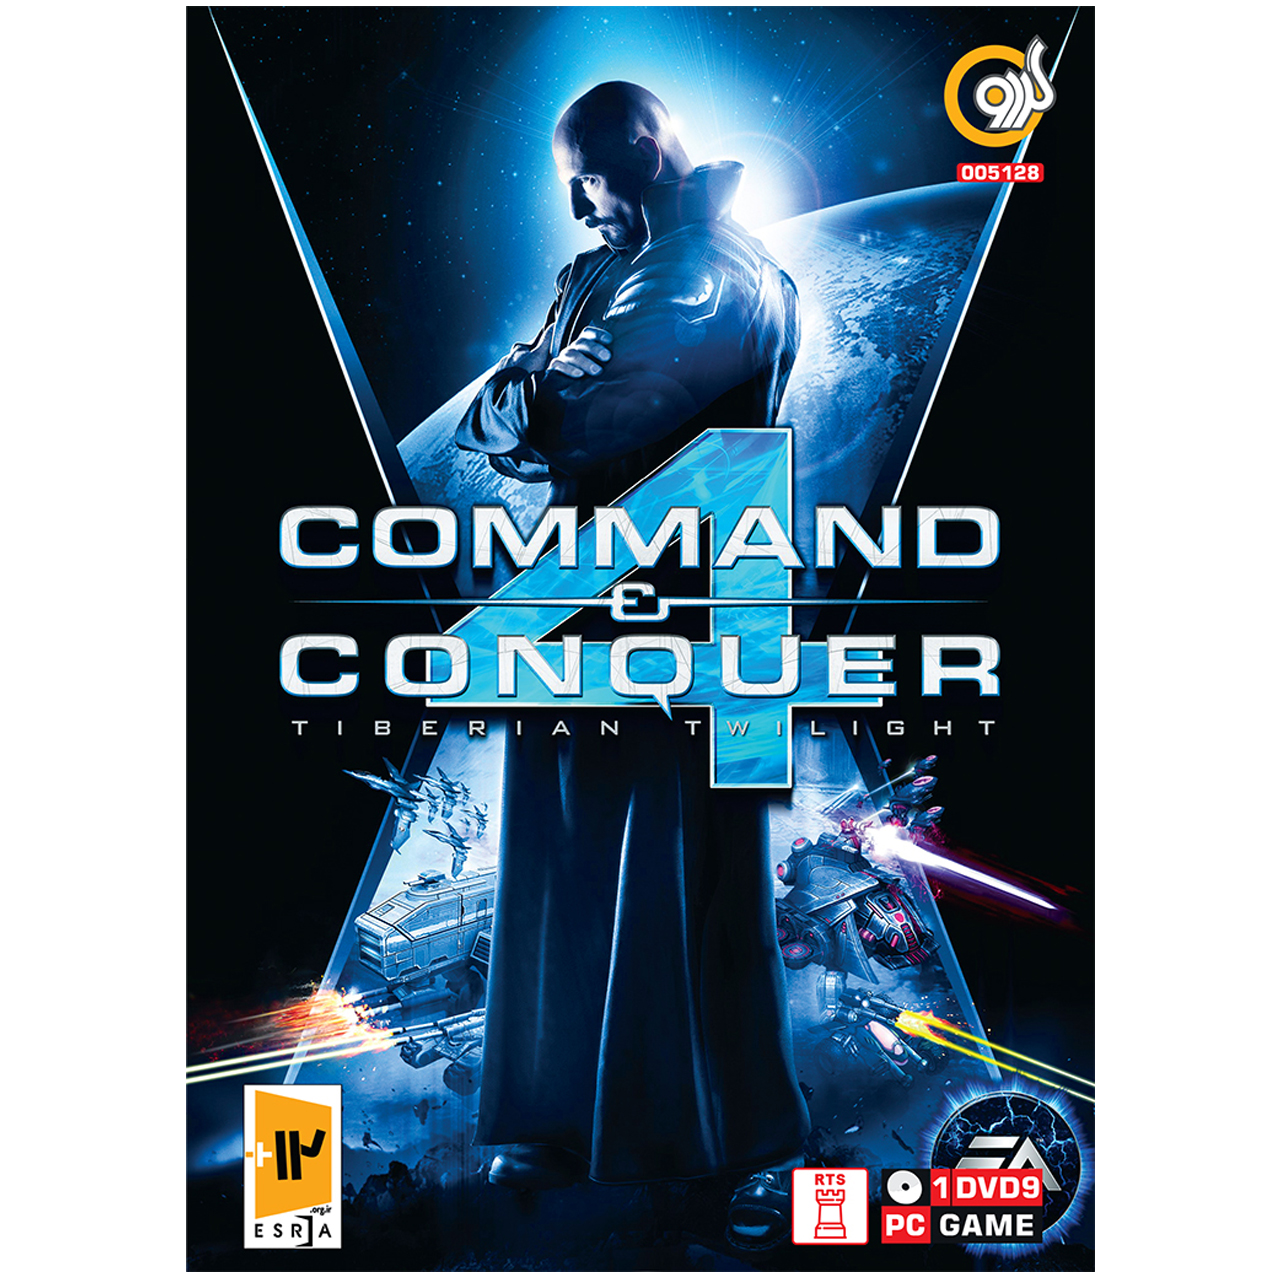 بازی گردو Command & Conquer 4 Tiberian Twilight مخصوص PC